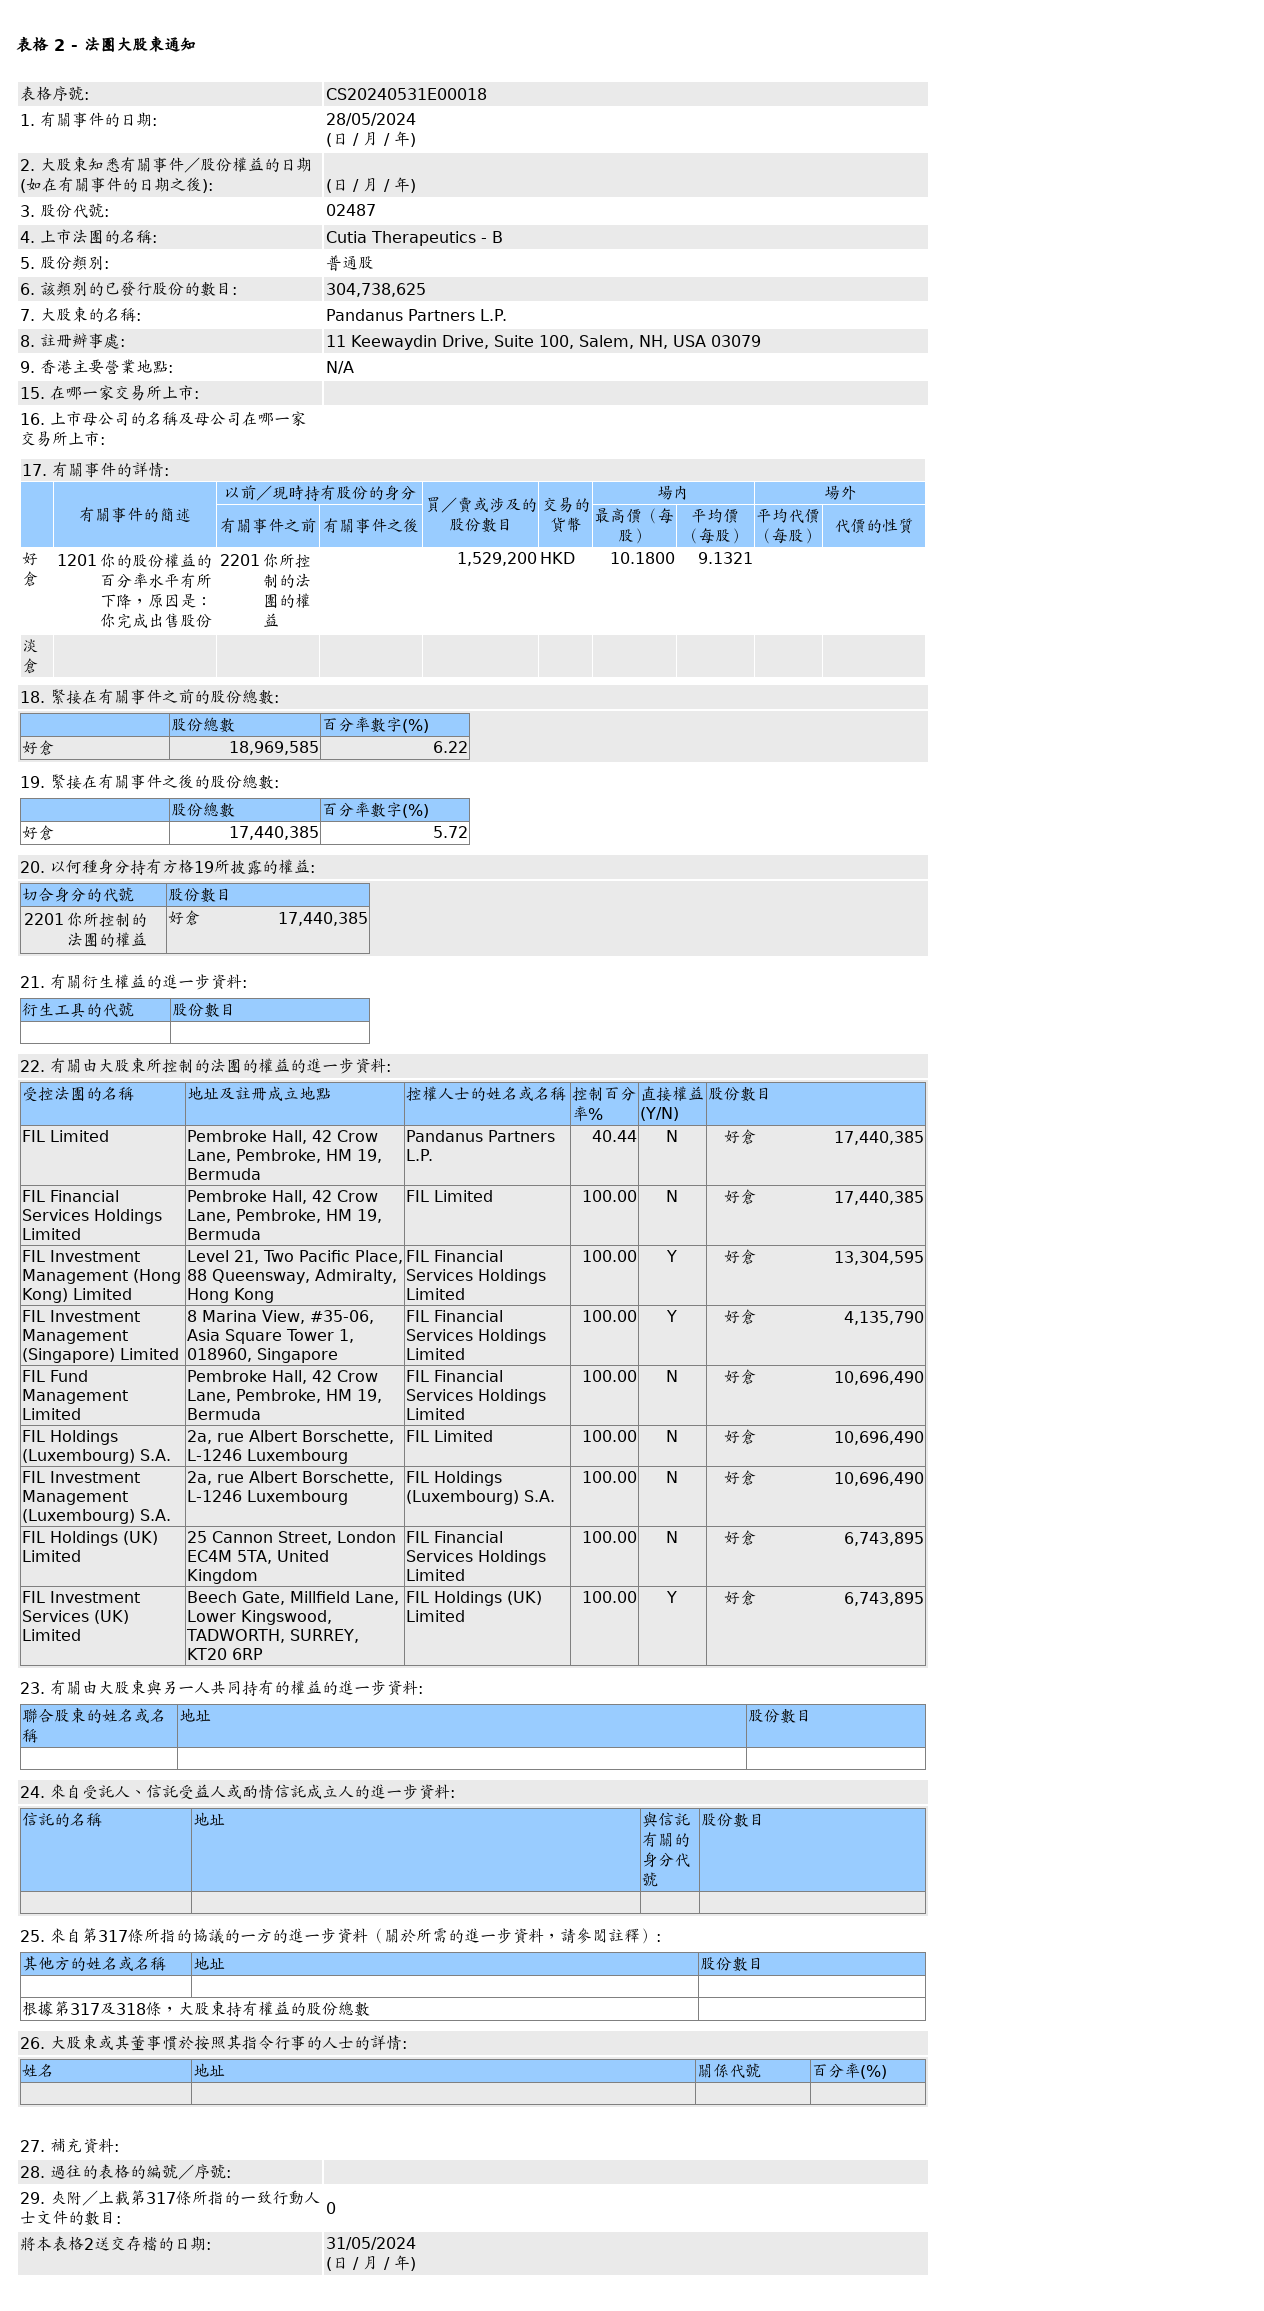 富达国际售出科笛-B(02487.HK)152.92万股普通股股份，价值约1,396.48万港元